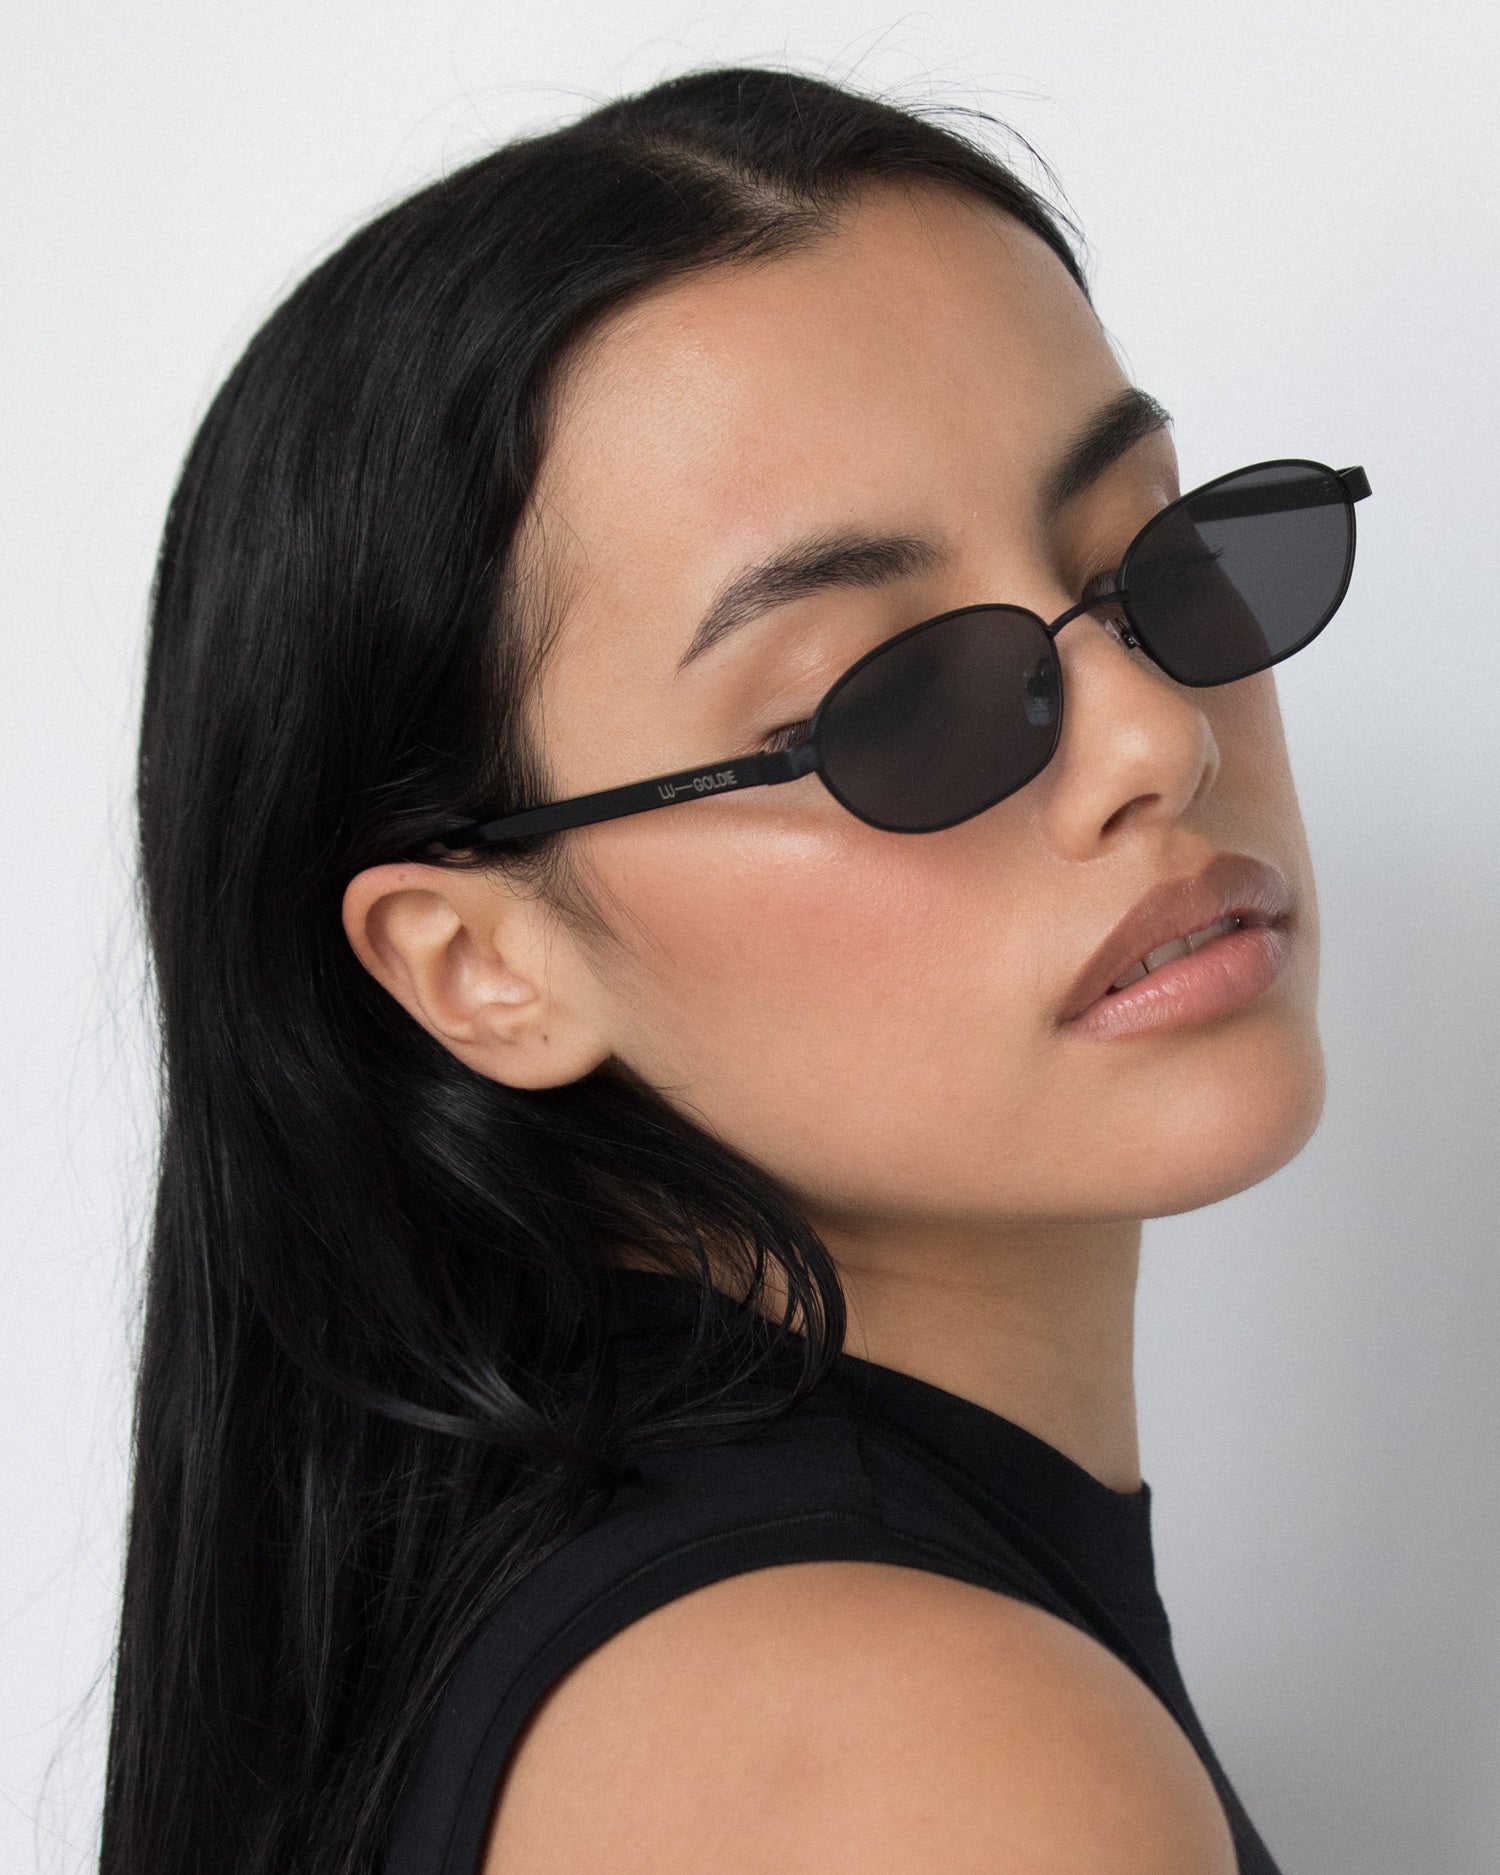 Lara Sunglasses in Black by LU GOLDIE Eyewear